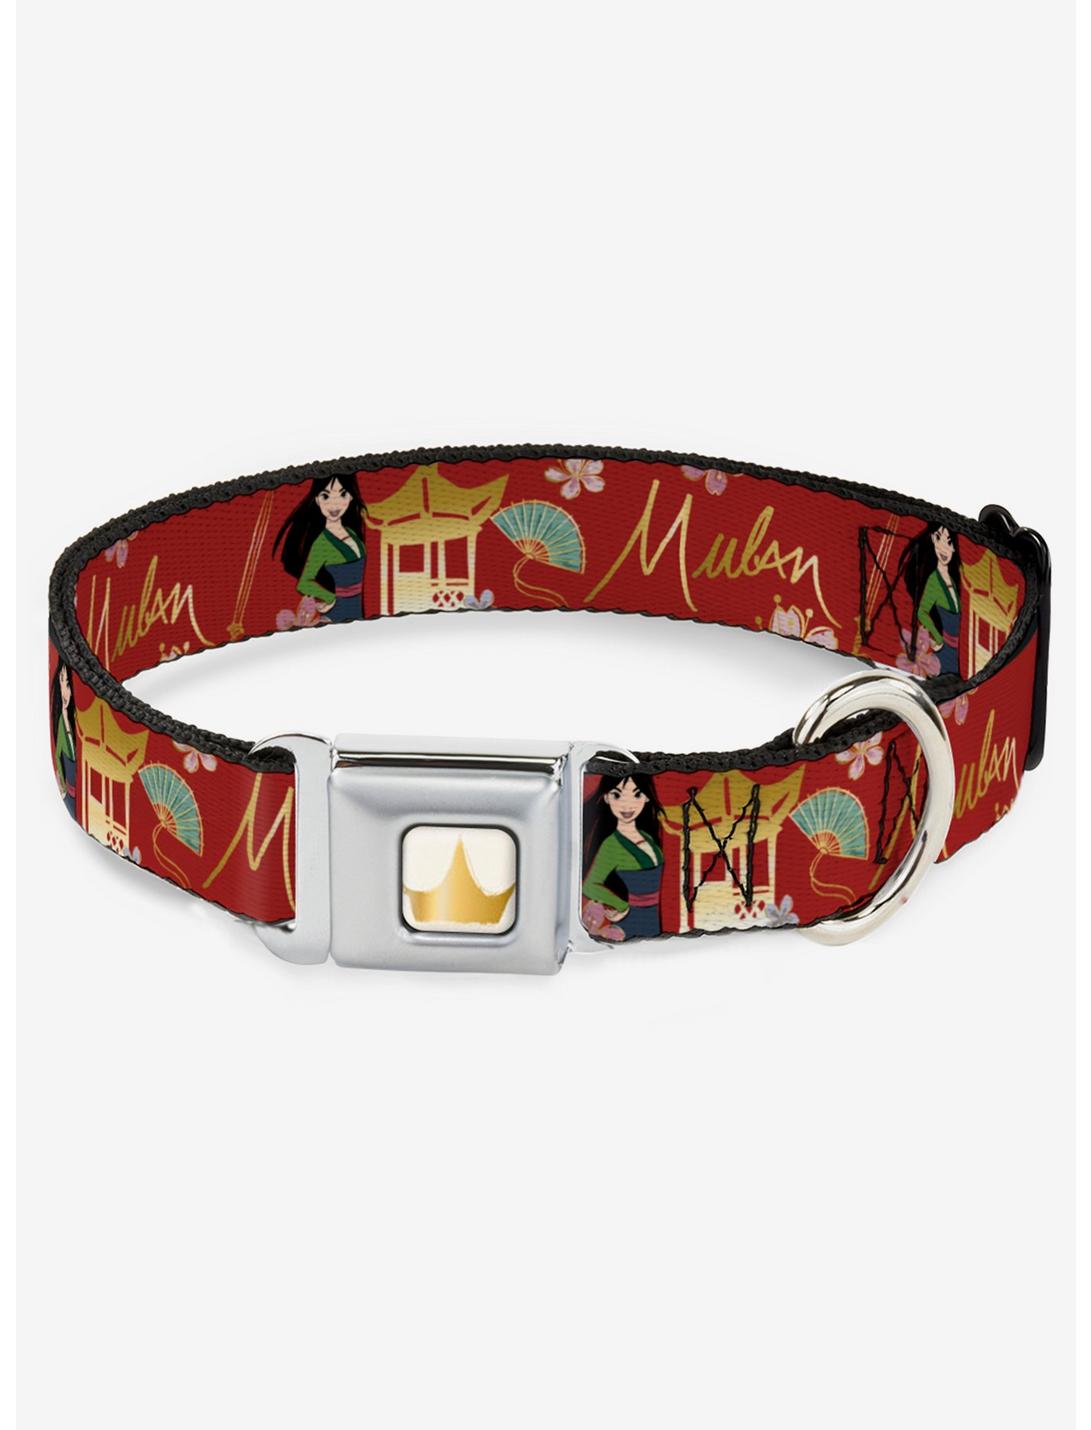 Plus Size Disney Mulan Gazebo Flowers Seatbelt Dog Collar, RED, hi-res